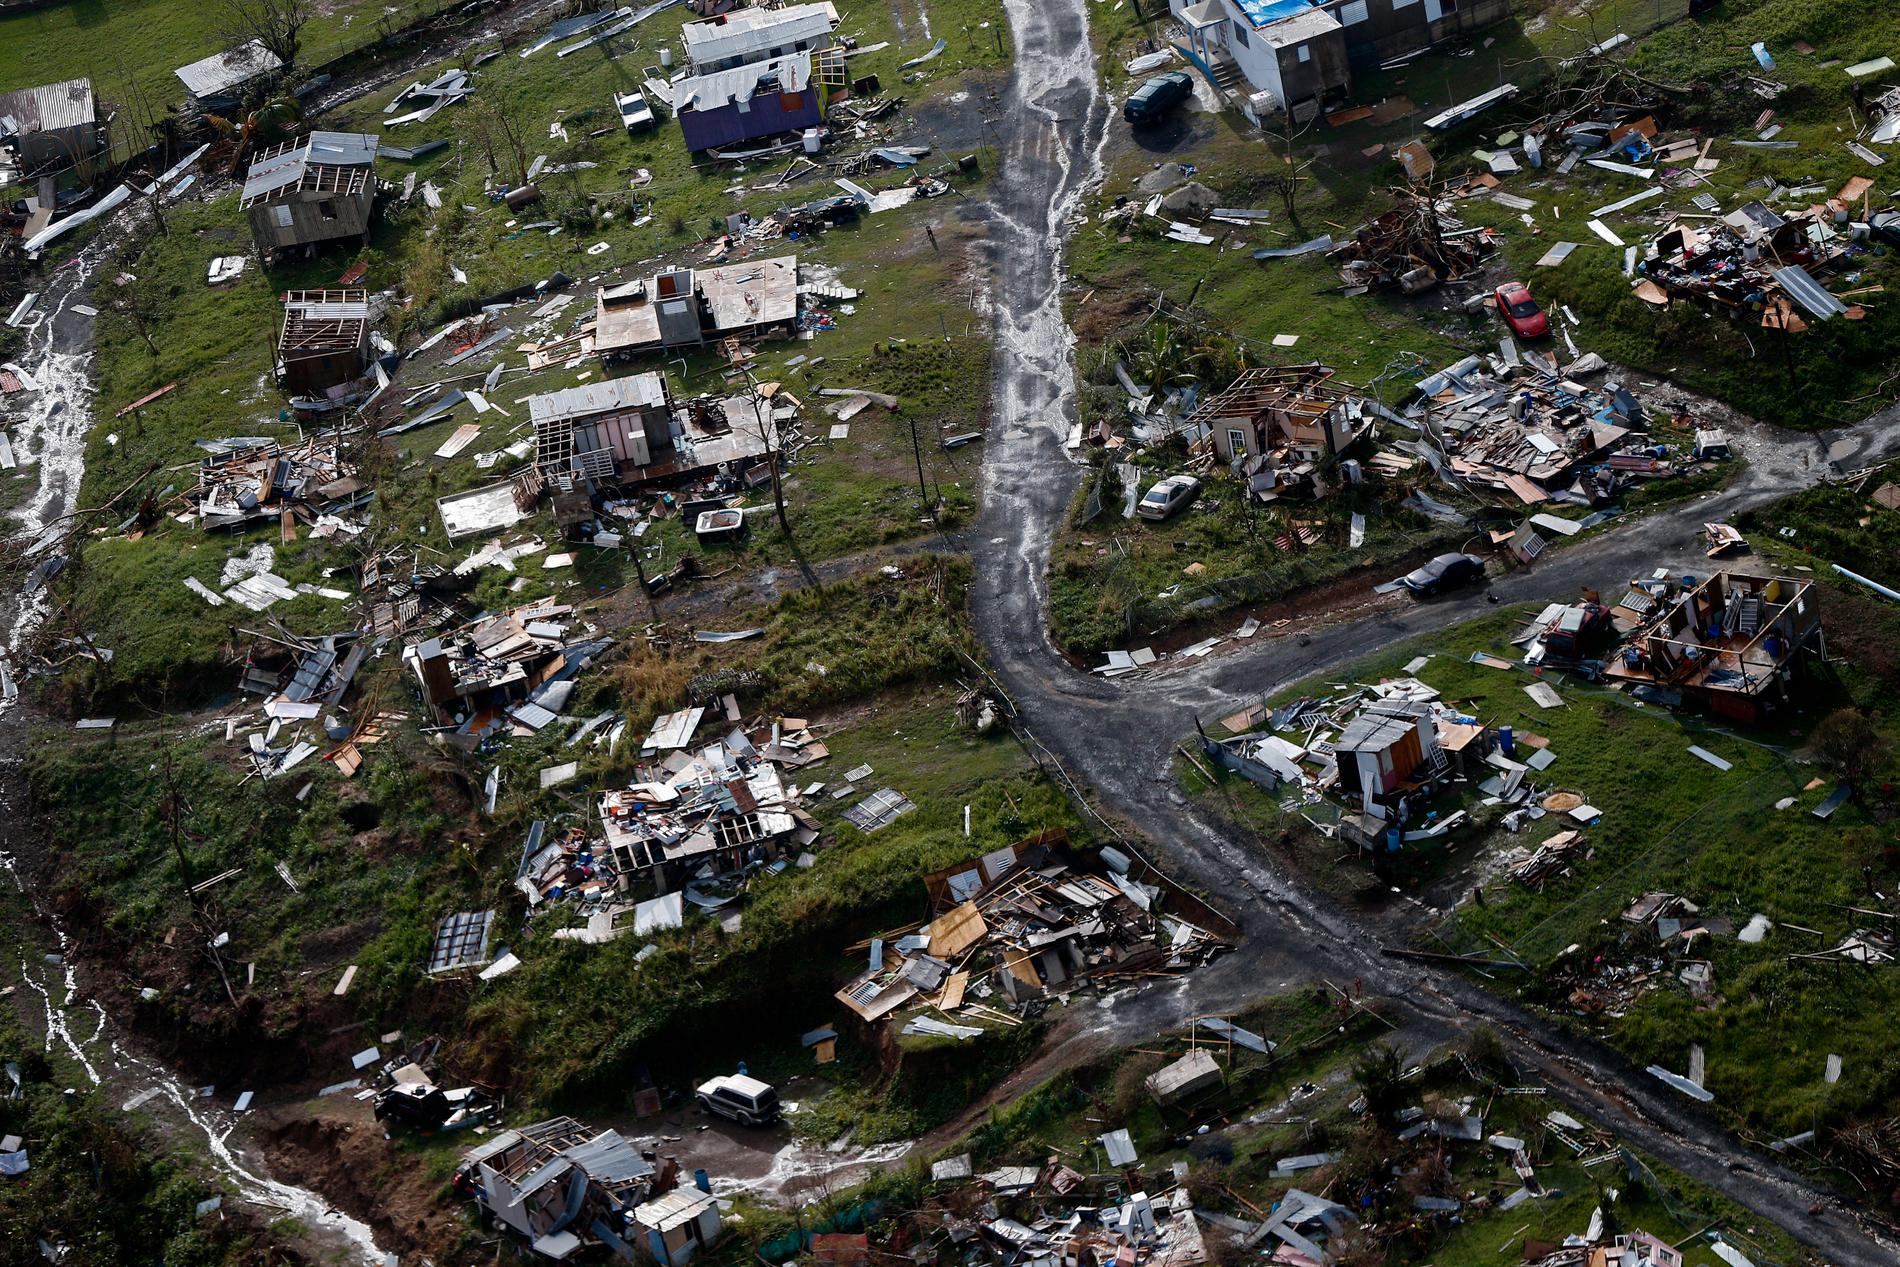 Samhällen förstörs i naturkatastrofer med koppling till extrema väderhändelser. Bilden är från Puerto Rico, där runt 3 000 människor omkom under orkanen Maria 2017. Arkivbild.